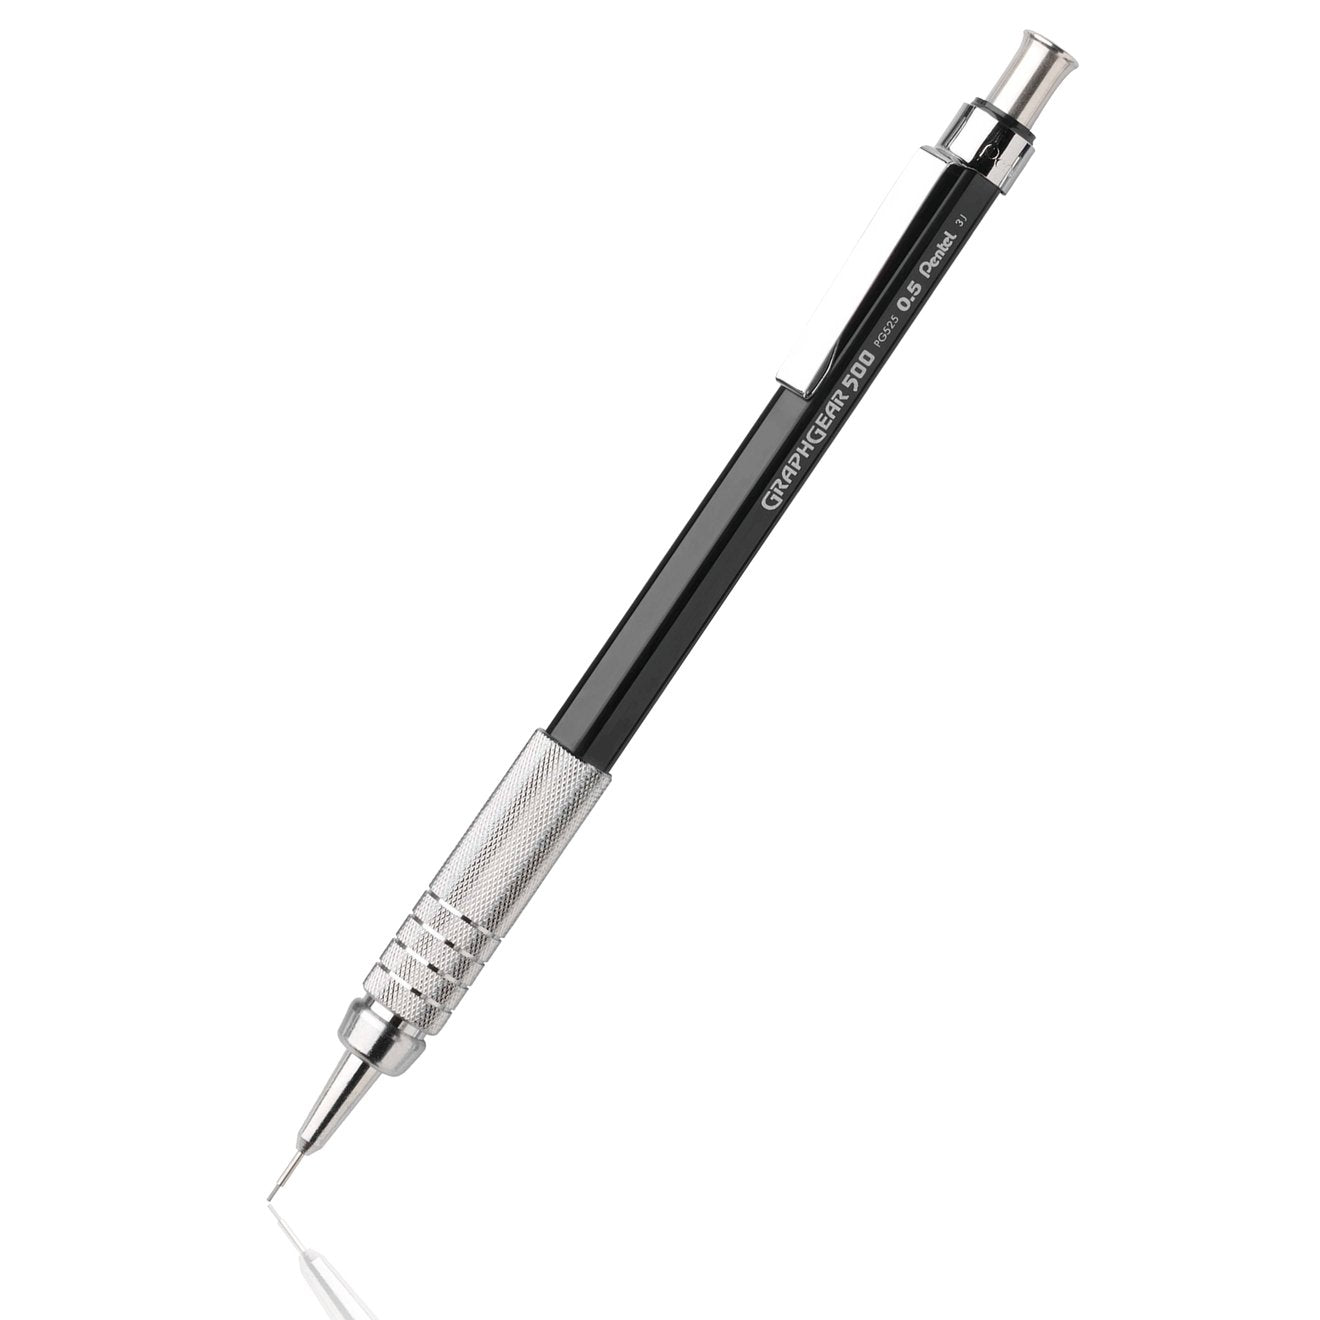 Winsor & Newton Fineliner Pen 0.5mm Black